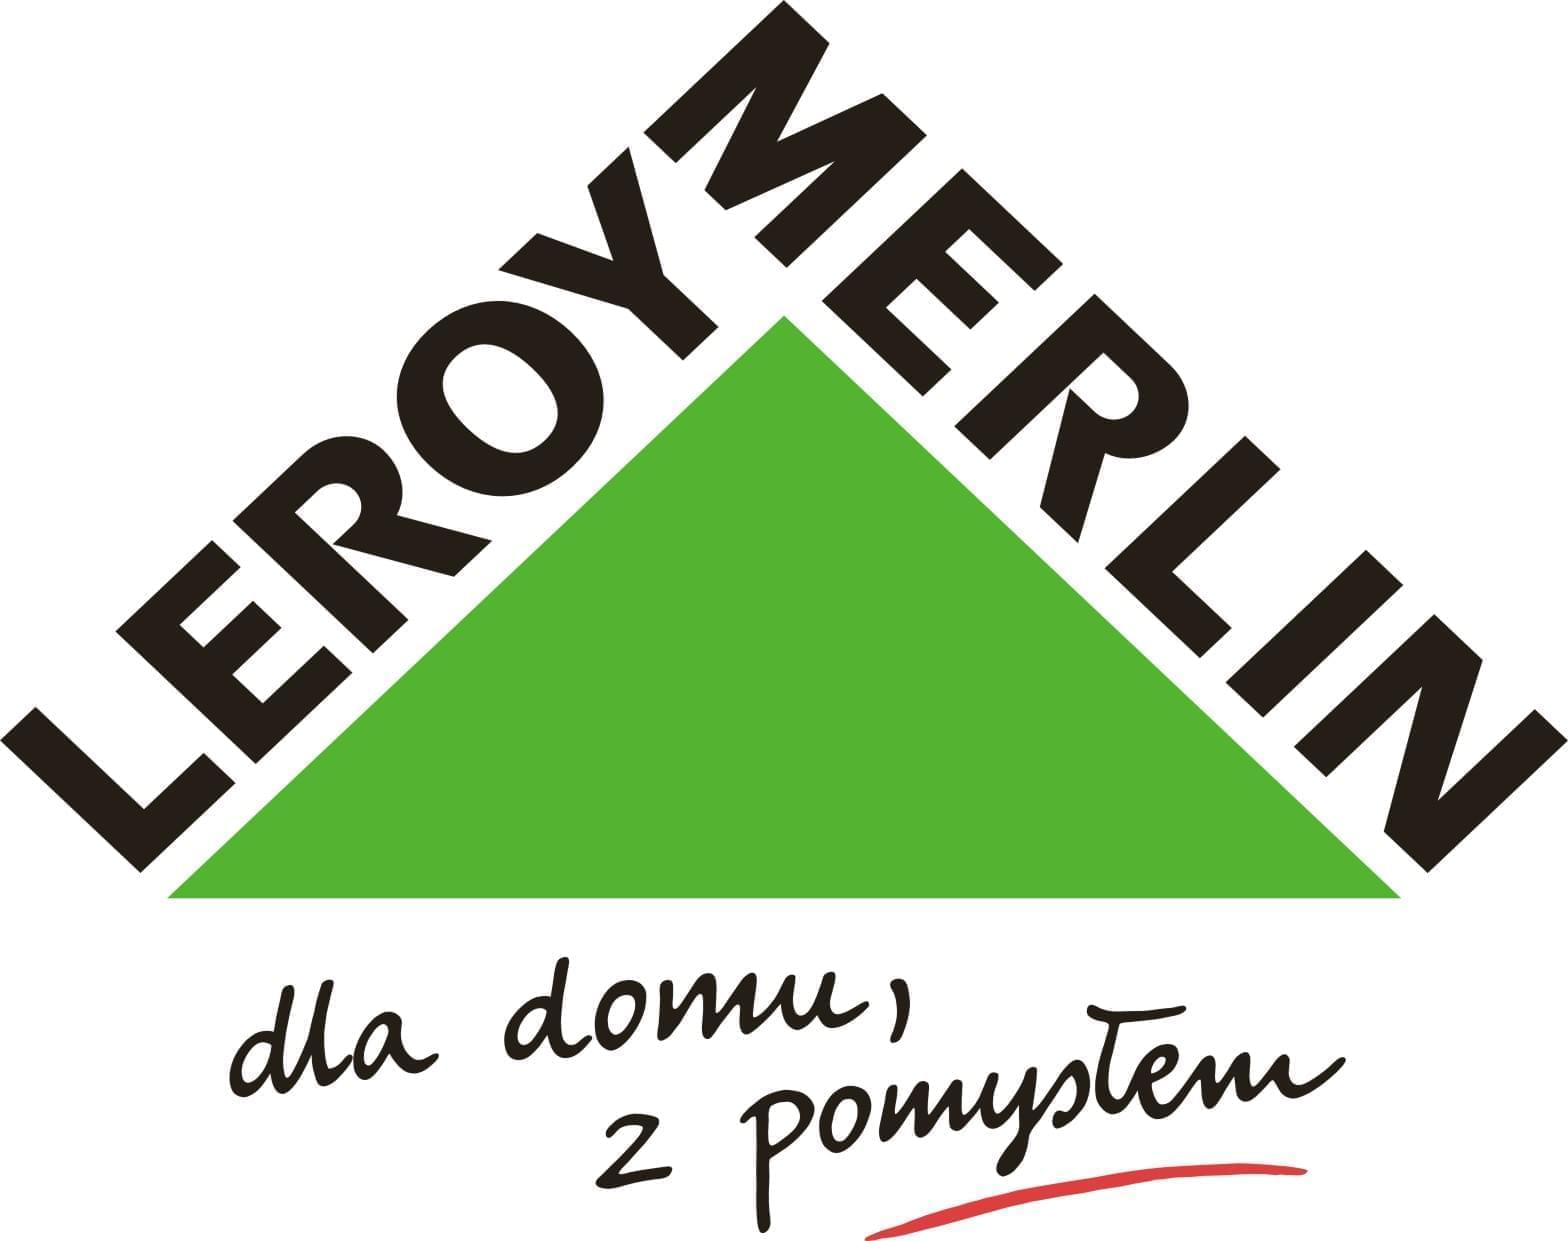 Компания Leroy Merlin начала свою деятельность в 1923 году во Франции